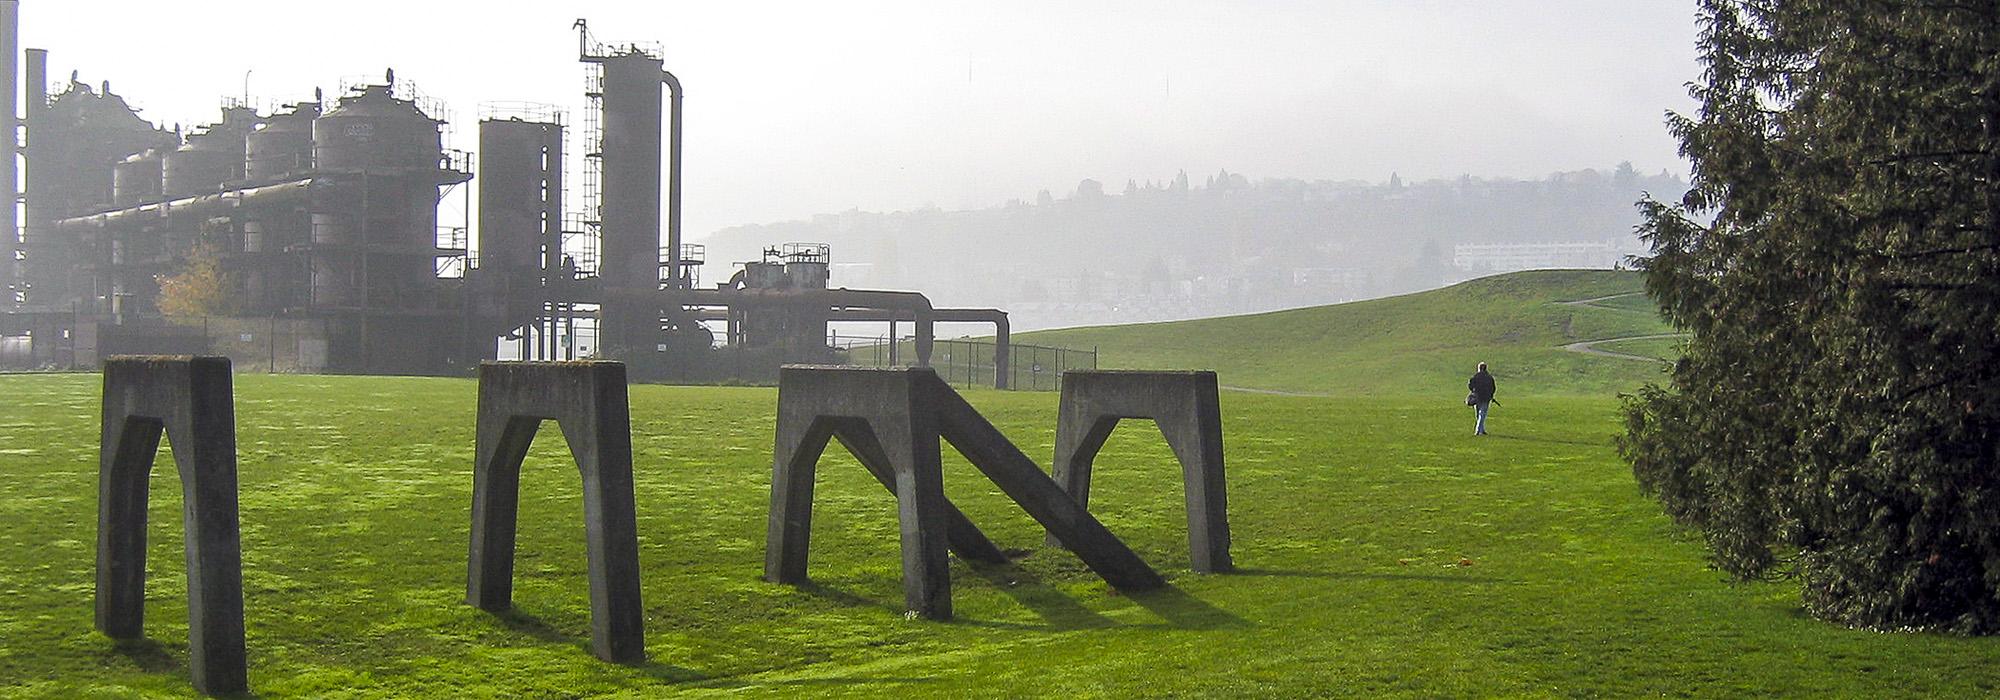 Richard Haag设计的西雅图煤气厂公园的照片